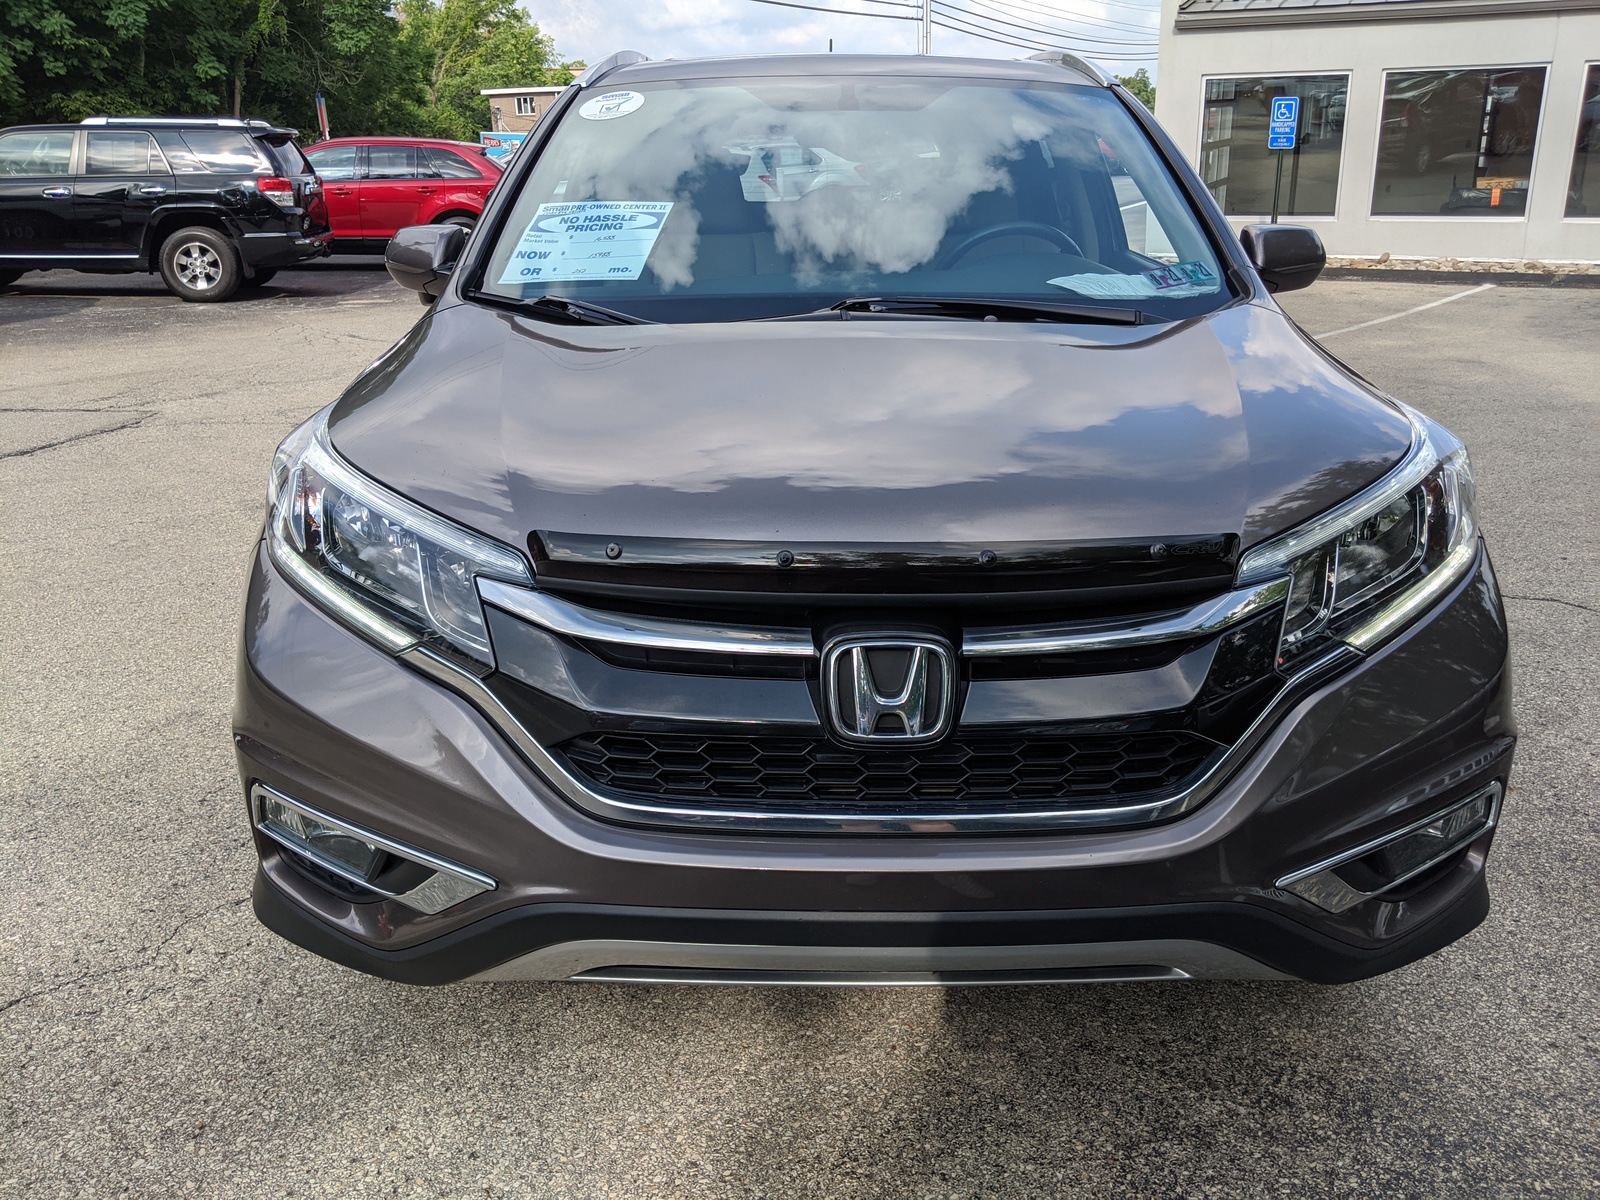 PreOwned 2015 Honda CRV EXL in Urban Titanium Metallic